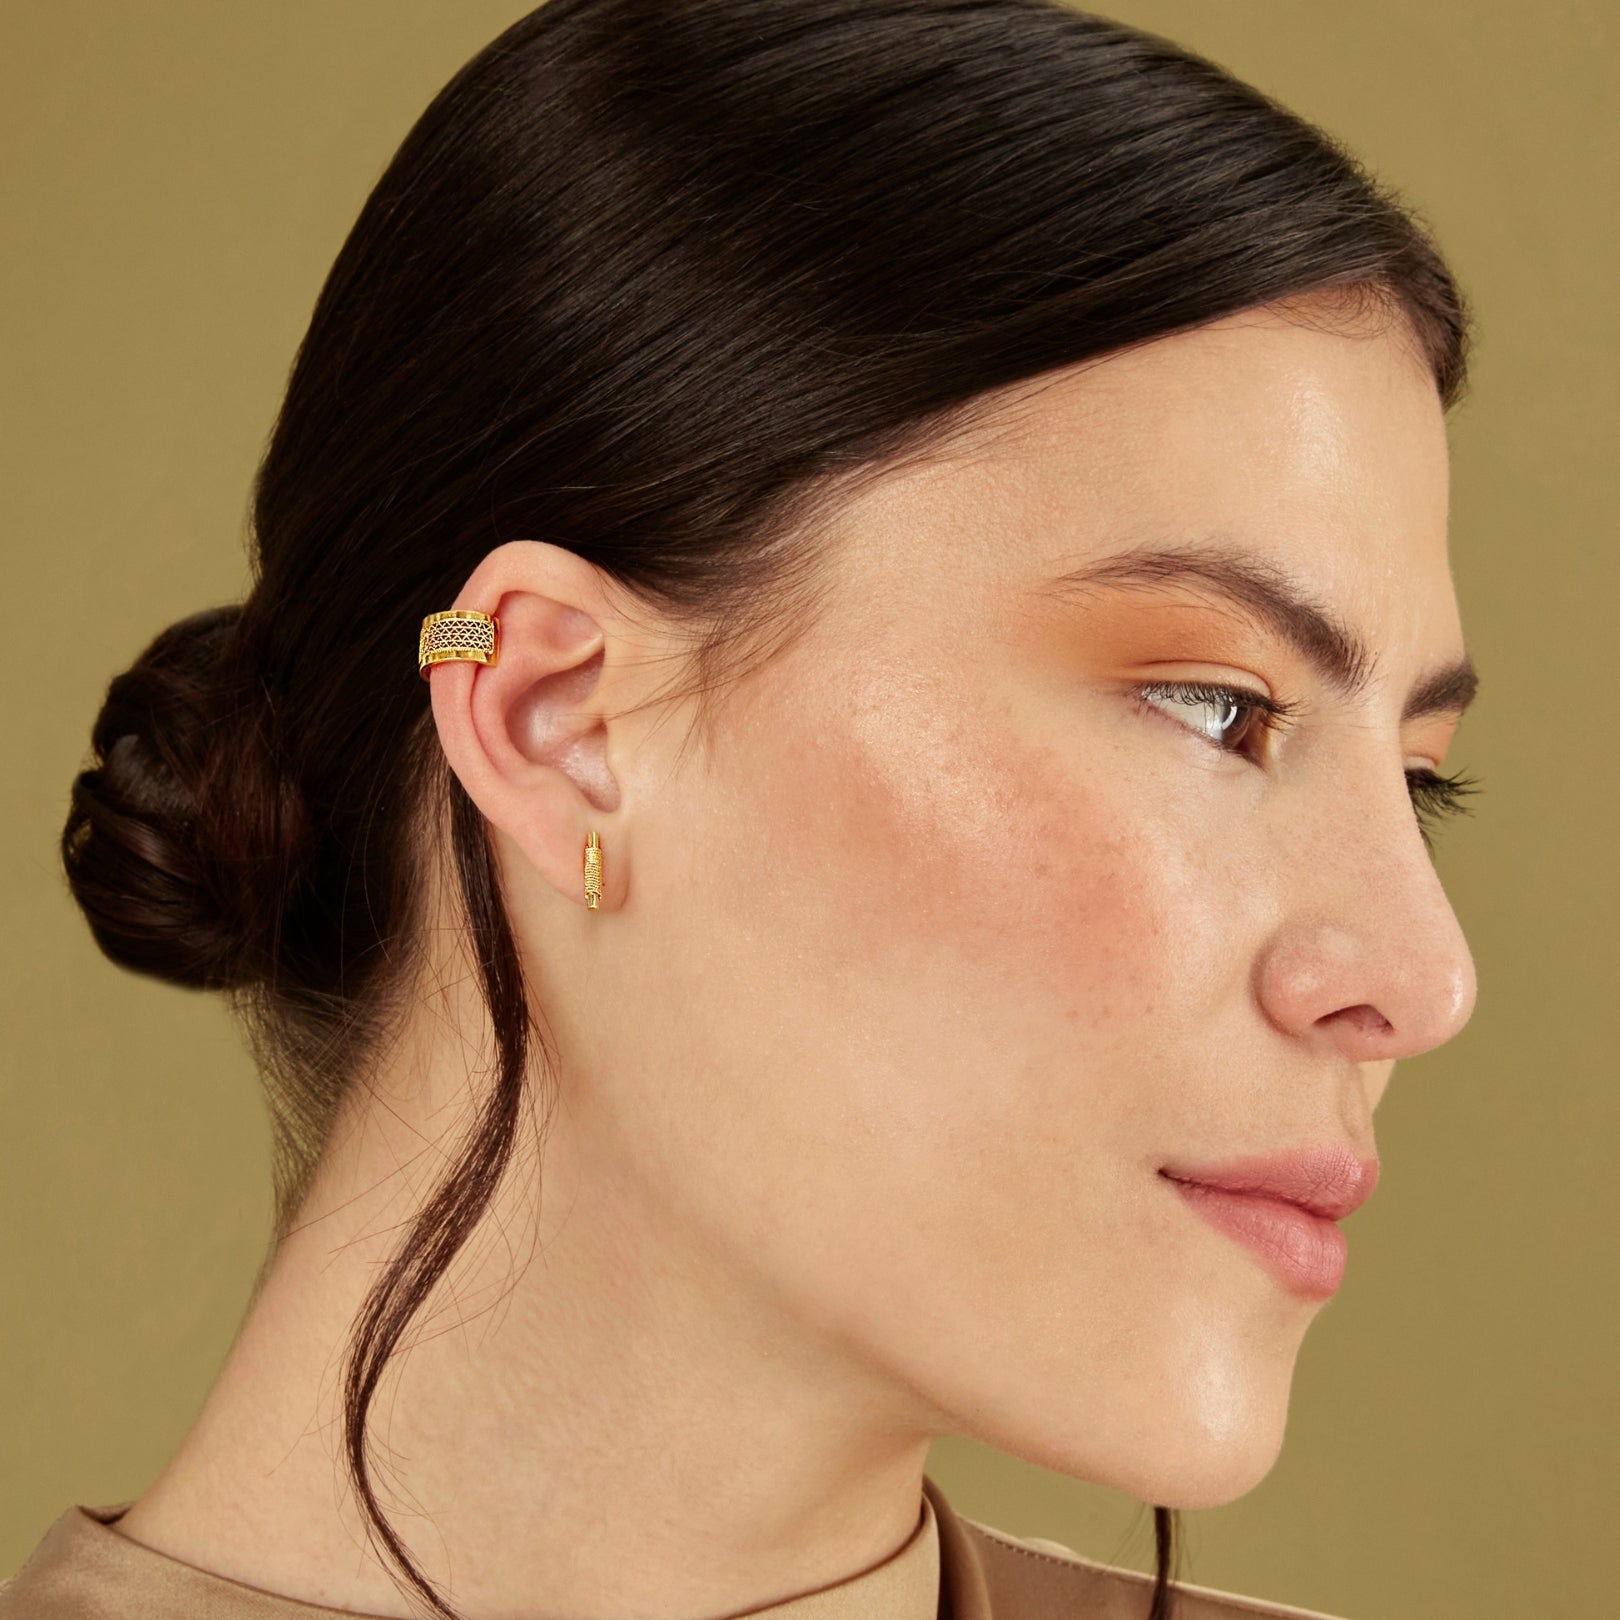 Aly 18k Gold Vermeil Plated Filigree Stud Earrings - Earrings